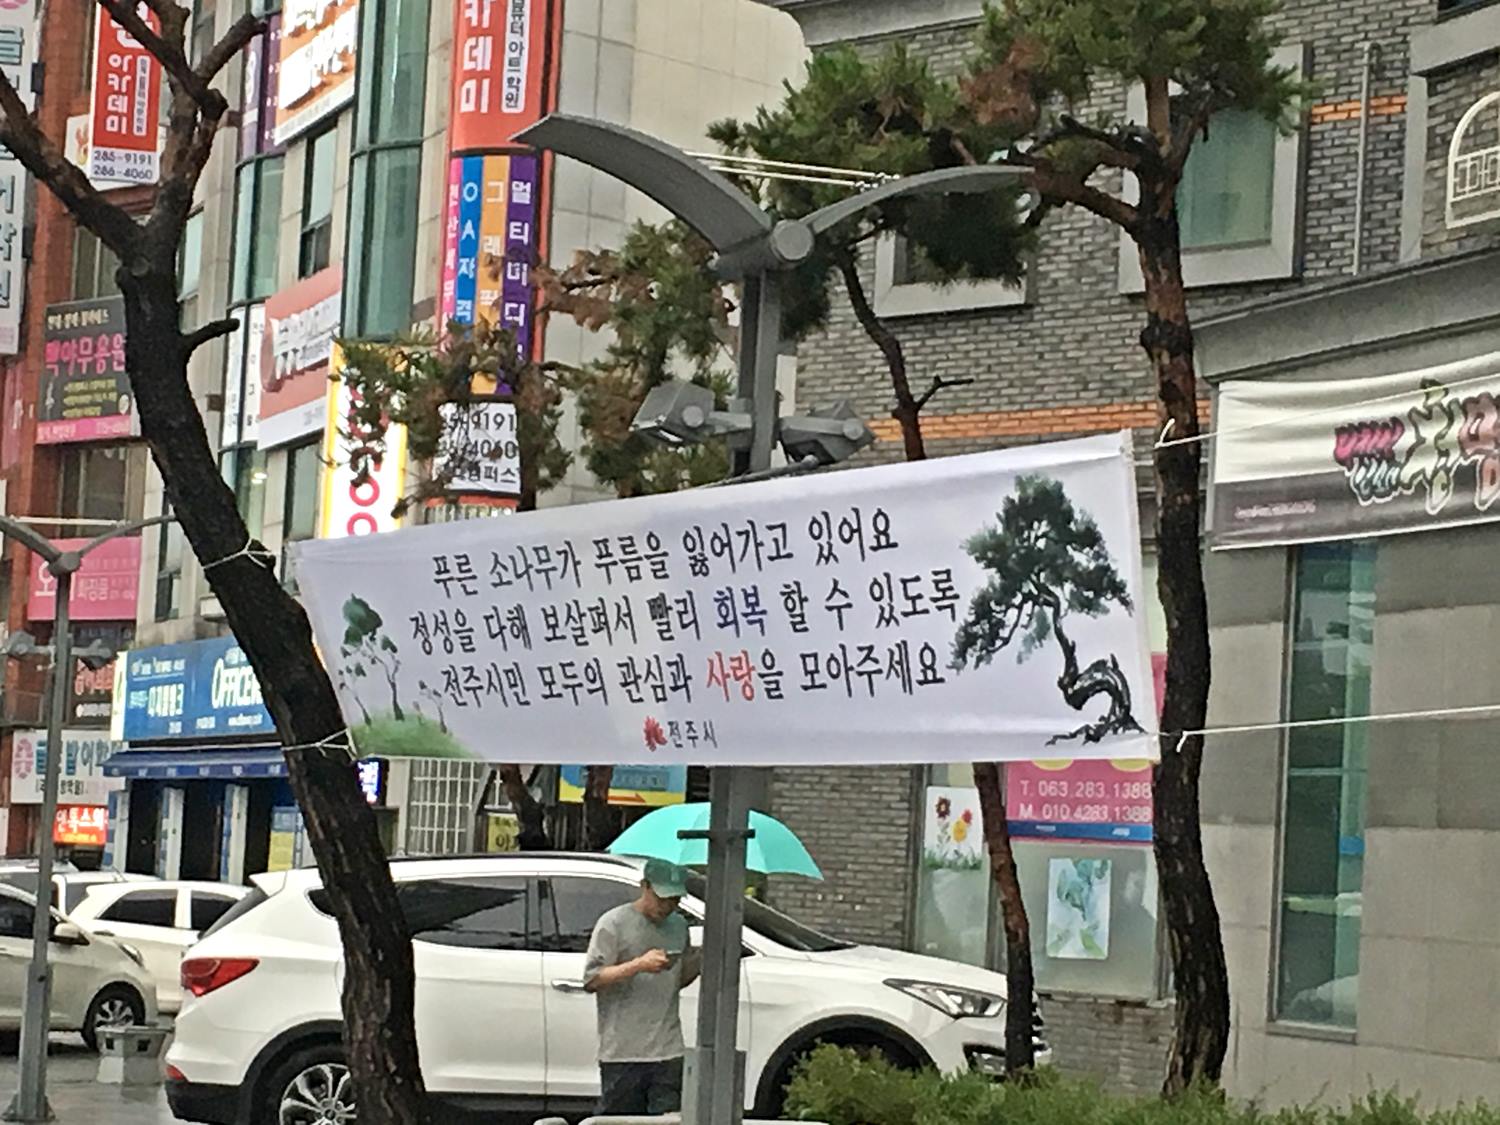 6월21일(생태도시과)도심한복판 시들어 가는 소나무 살리기 작업 박차!.JPG